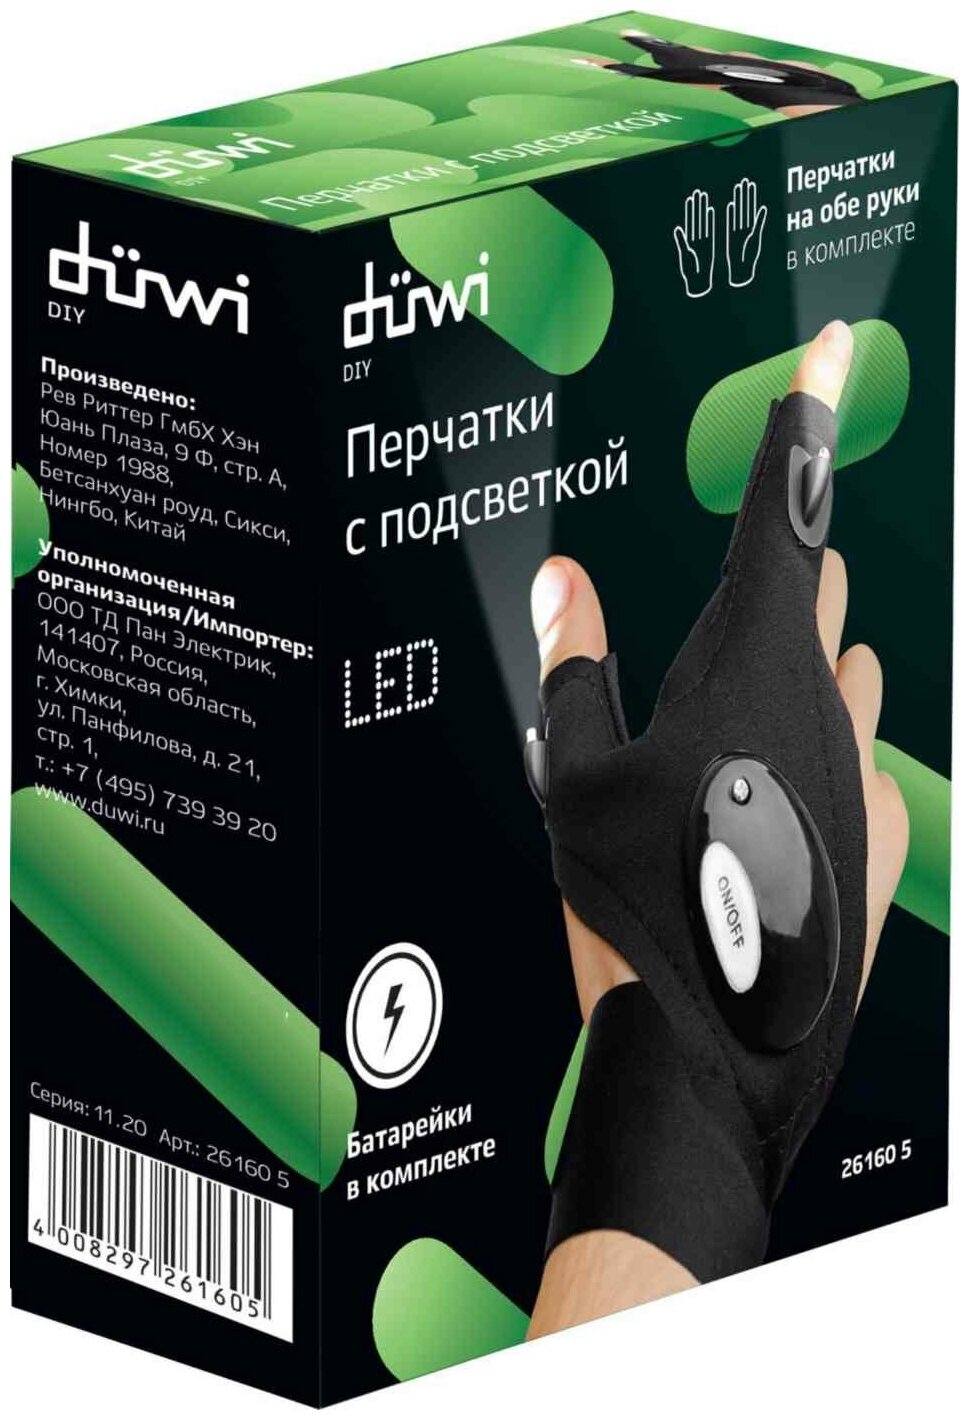 Фонарь-перчатка duwi со встроенной подсветкой, комплект 2 шт. Без бренда - фото №6